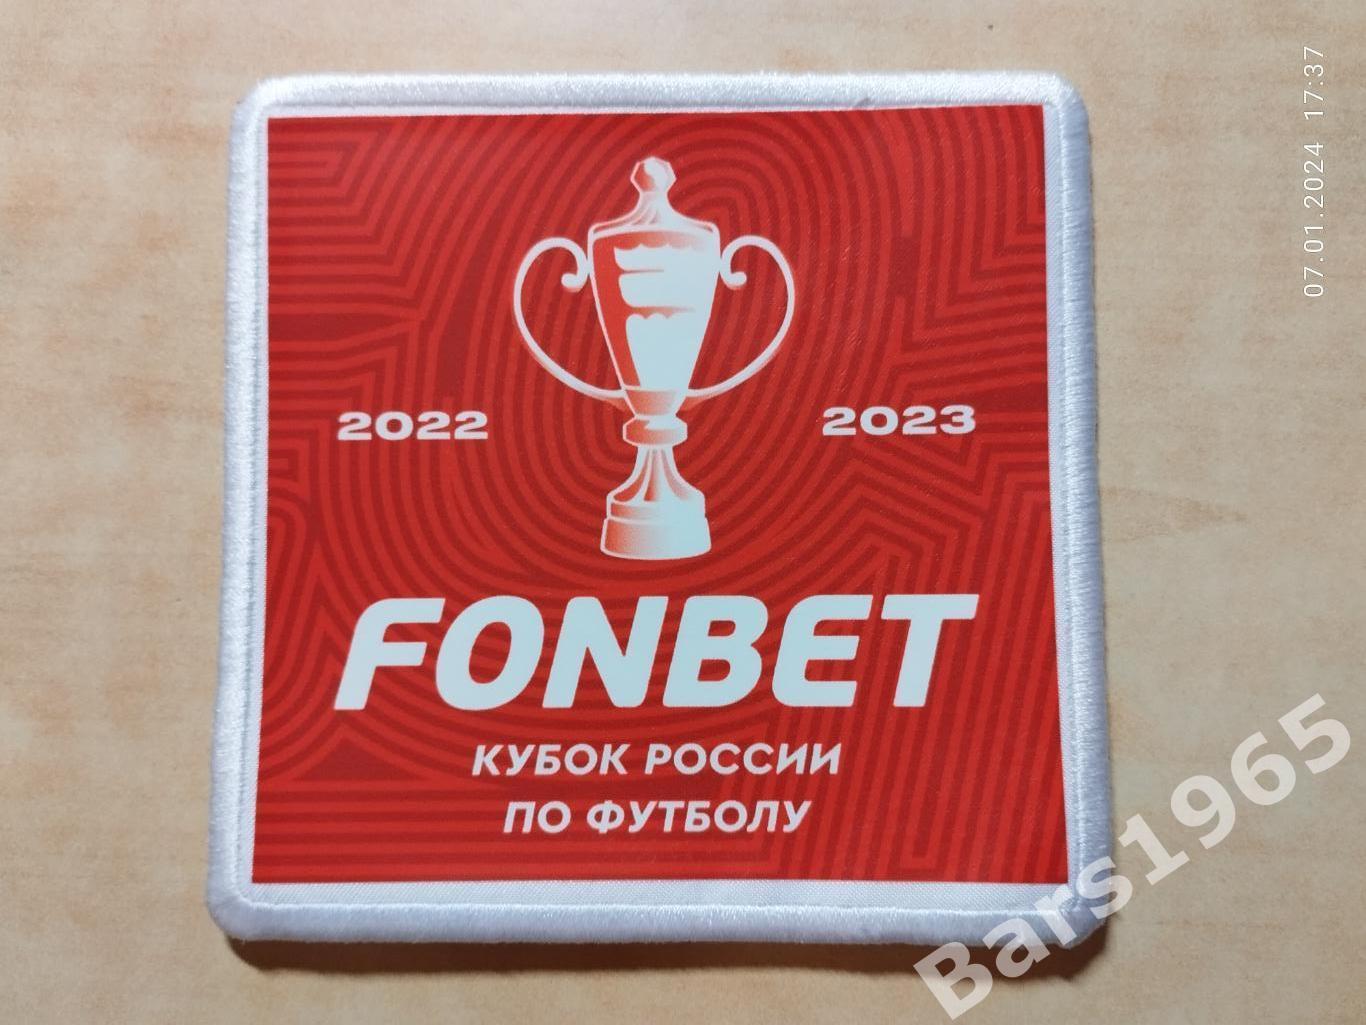 Шеврон Fonbet Кубок России по футболу 2022-2023